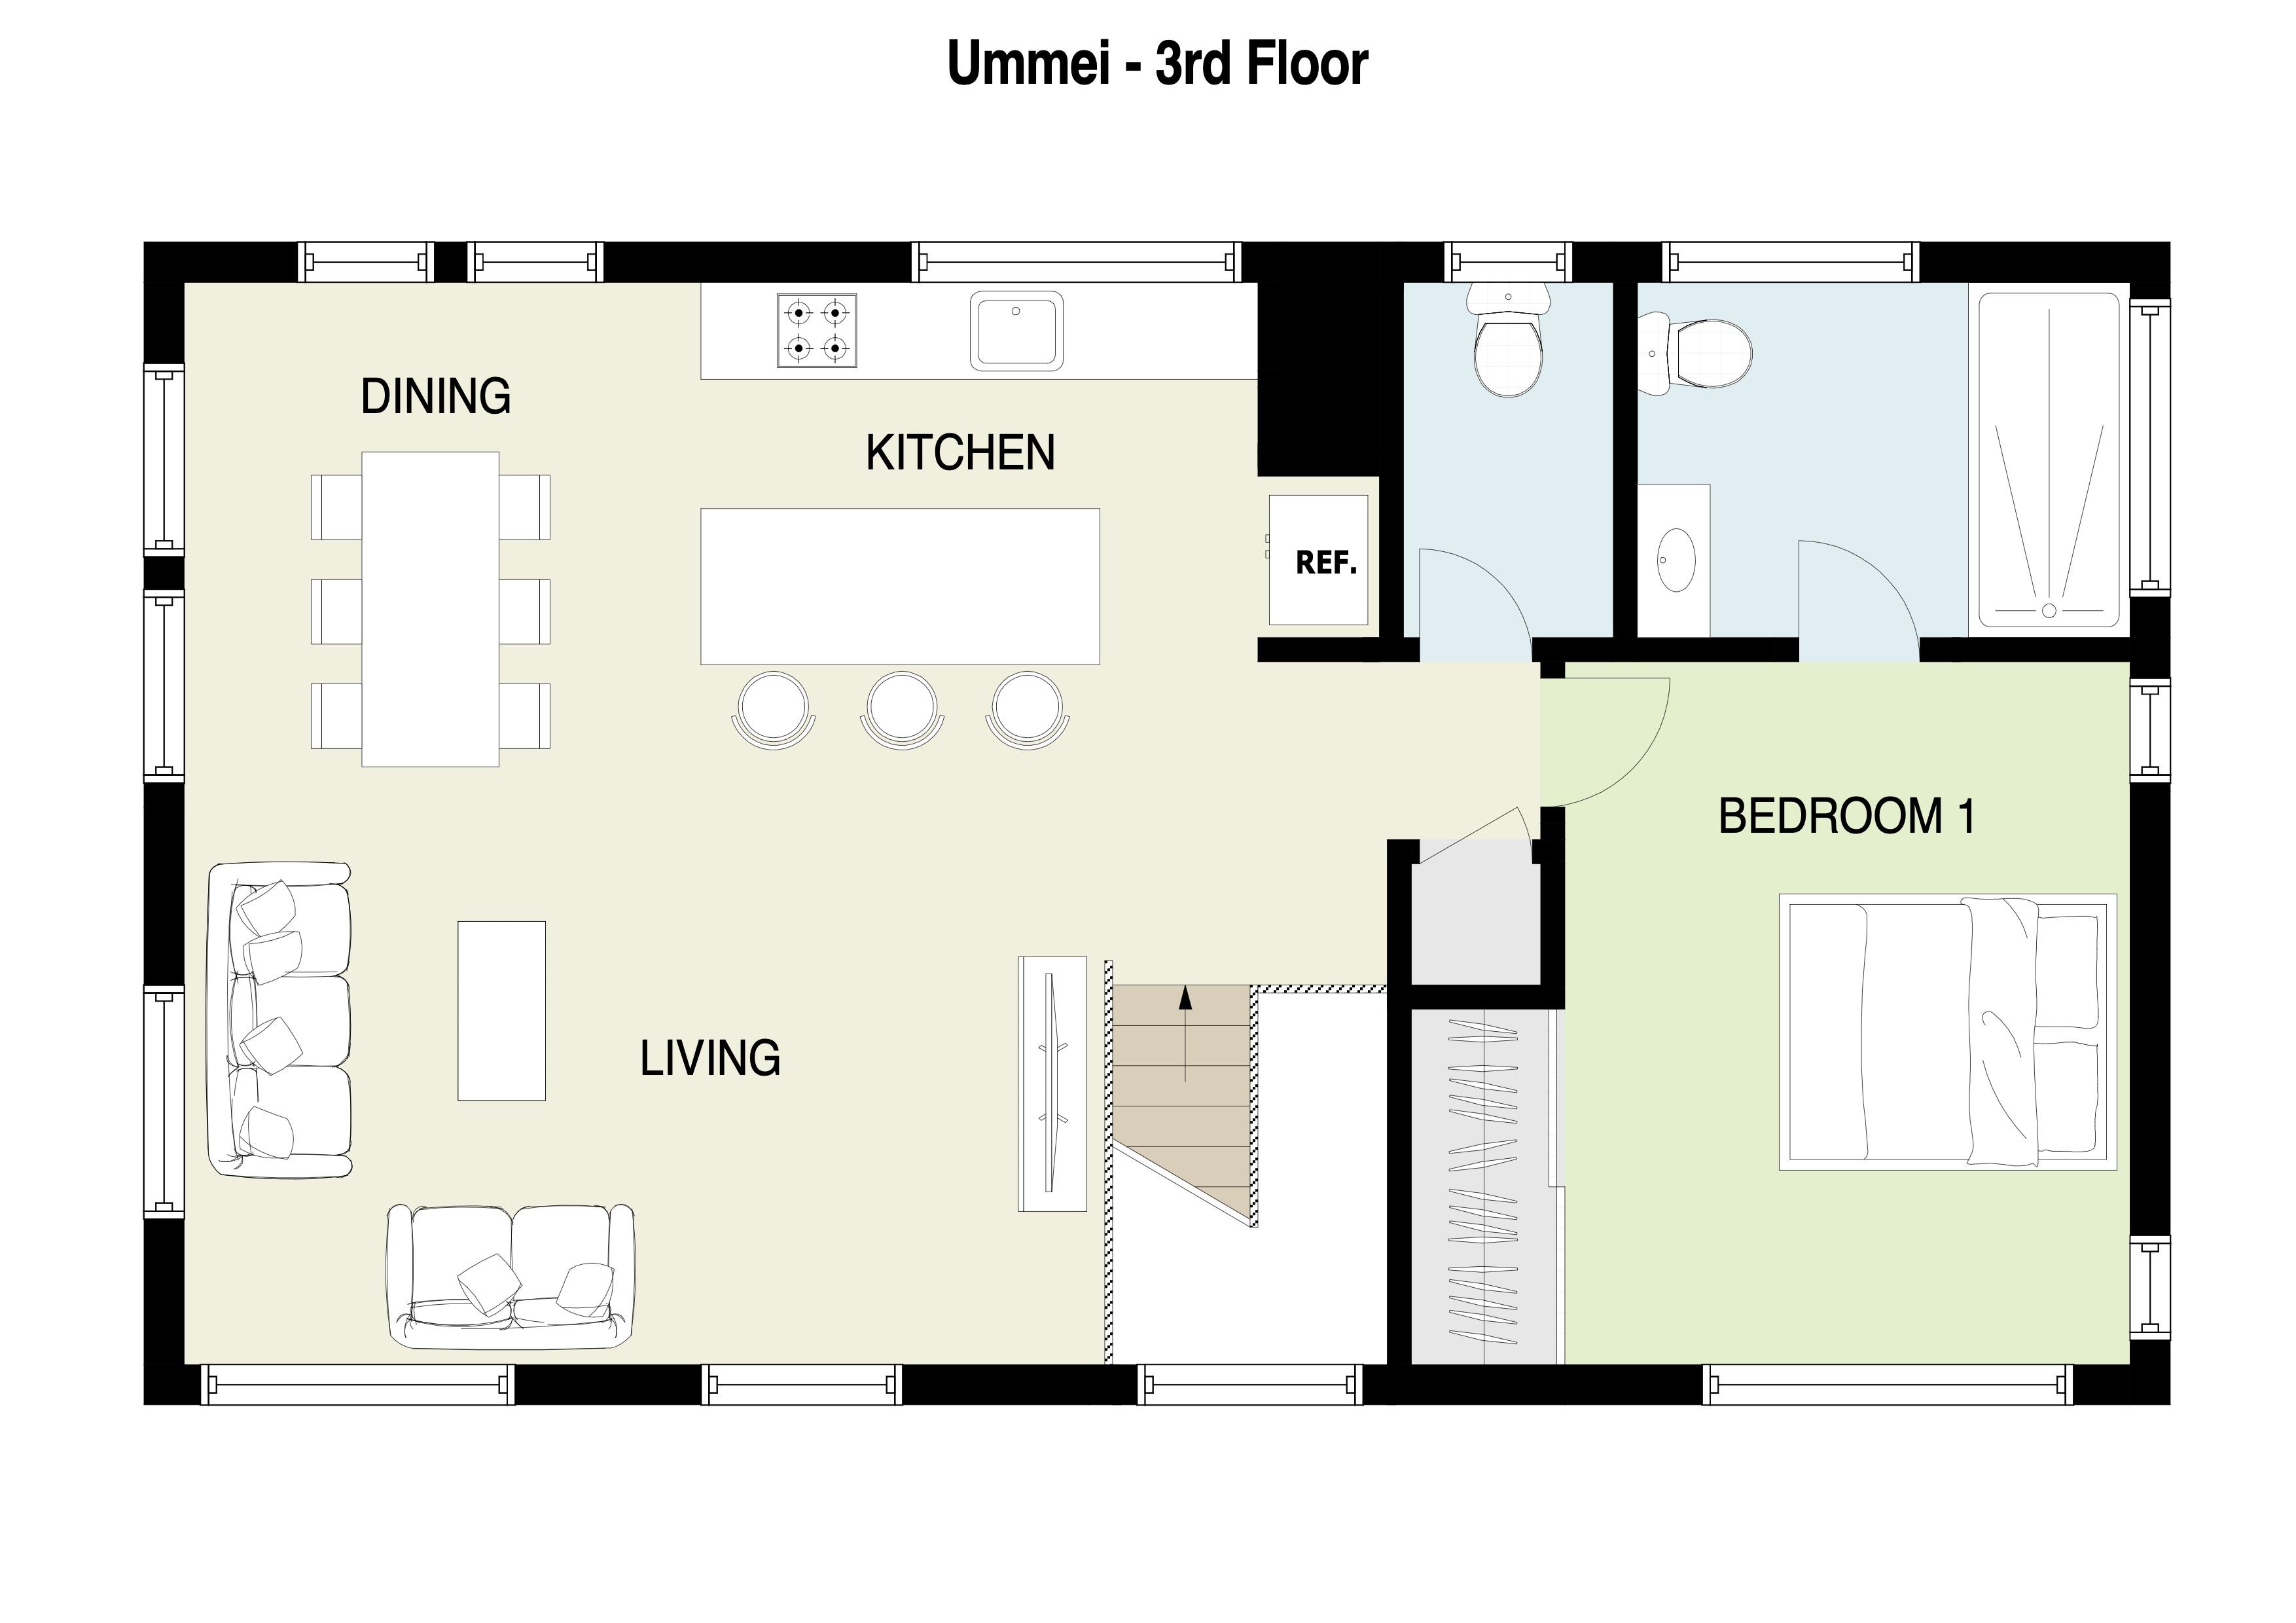 Ummei 3rd Floor Plan